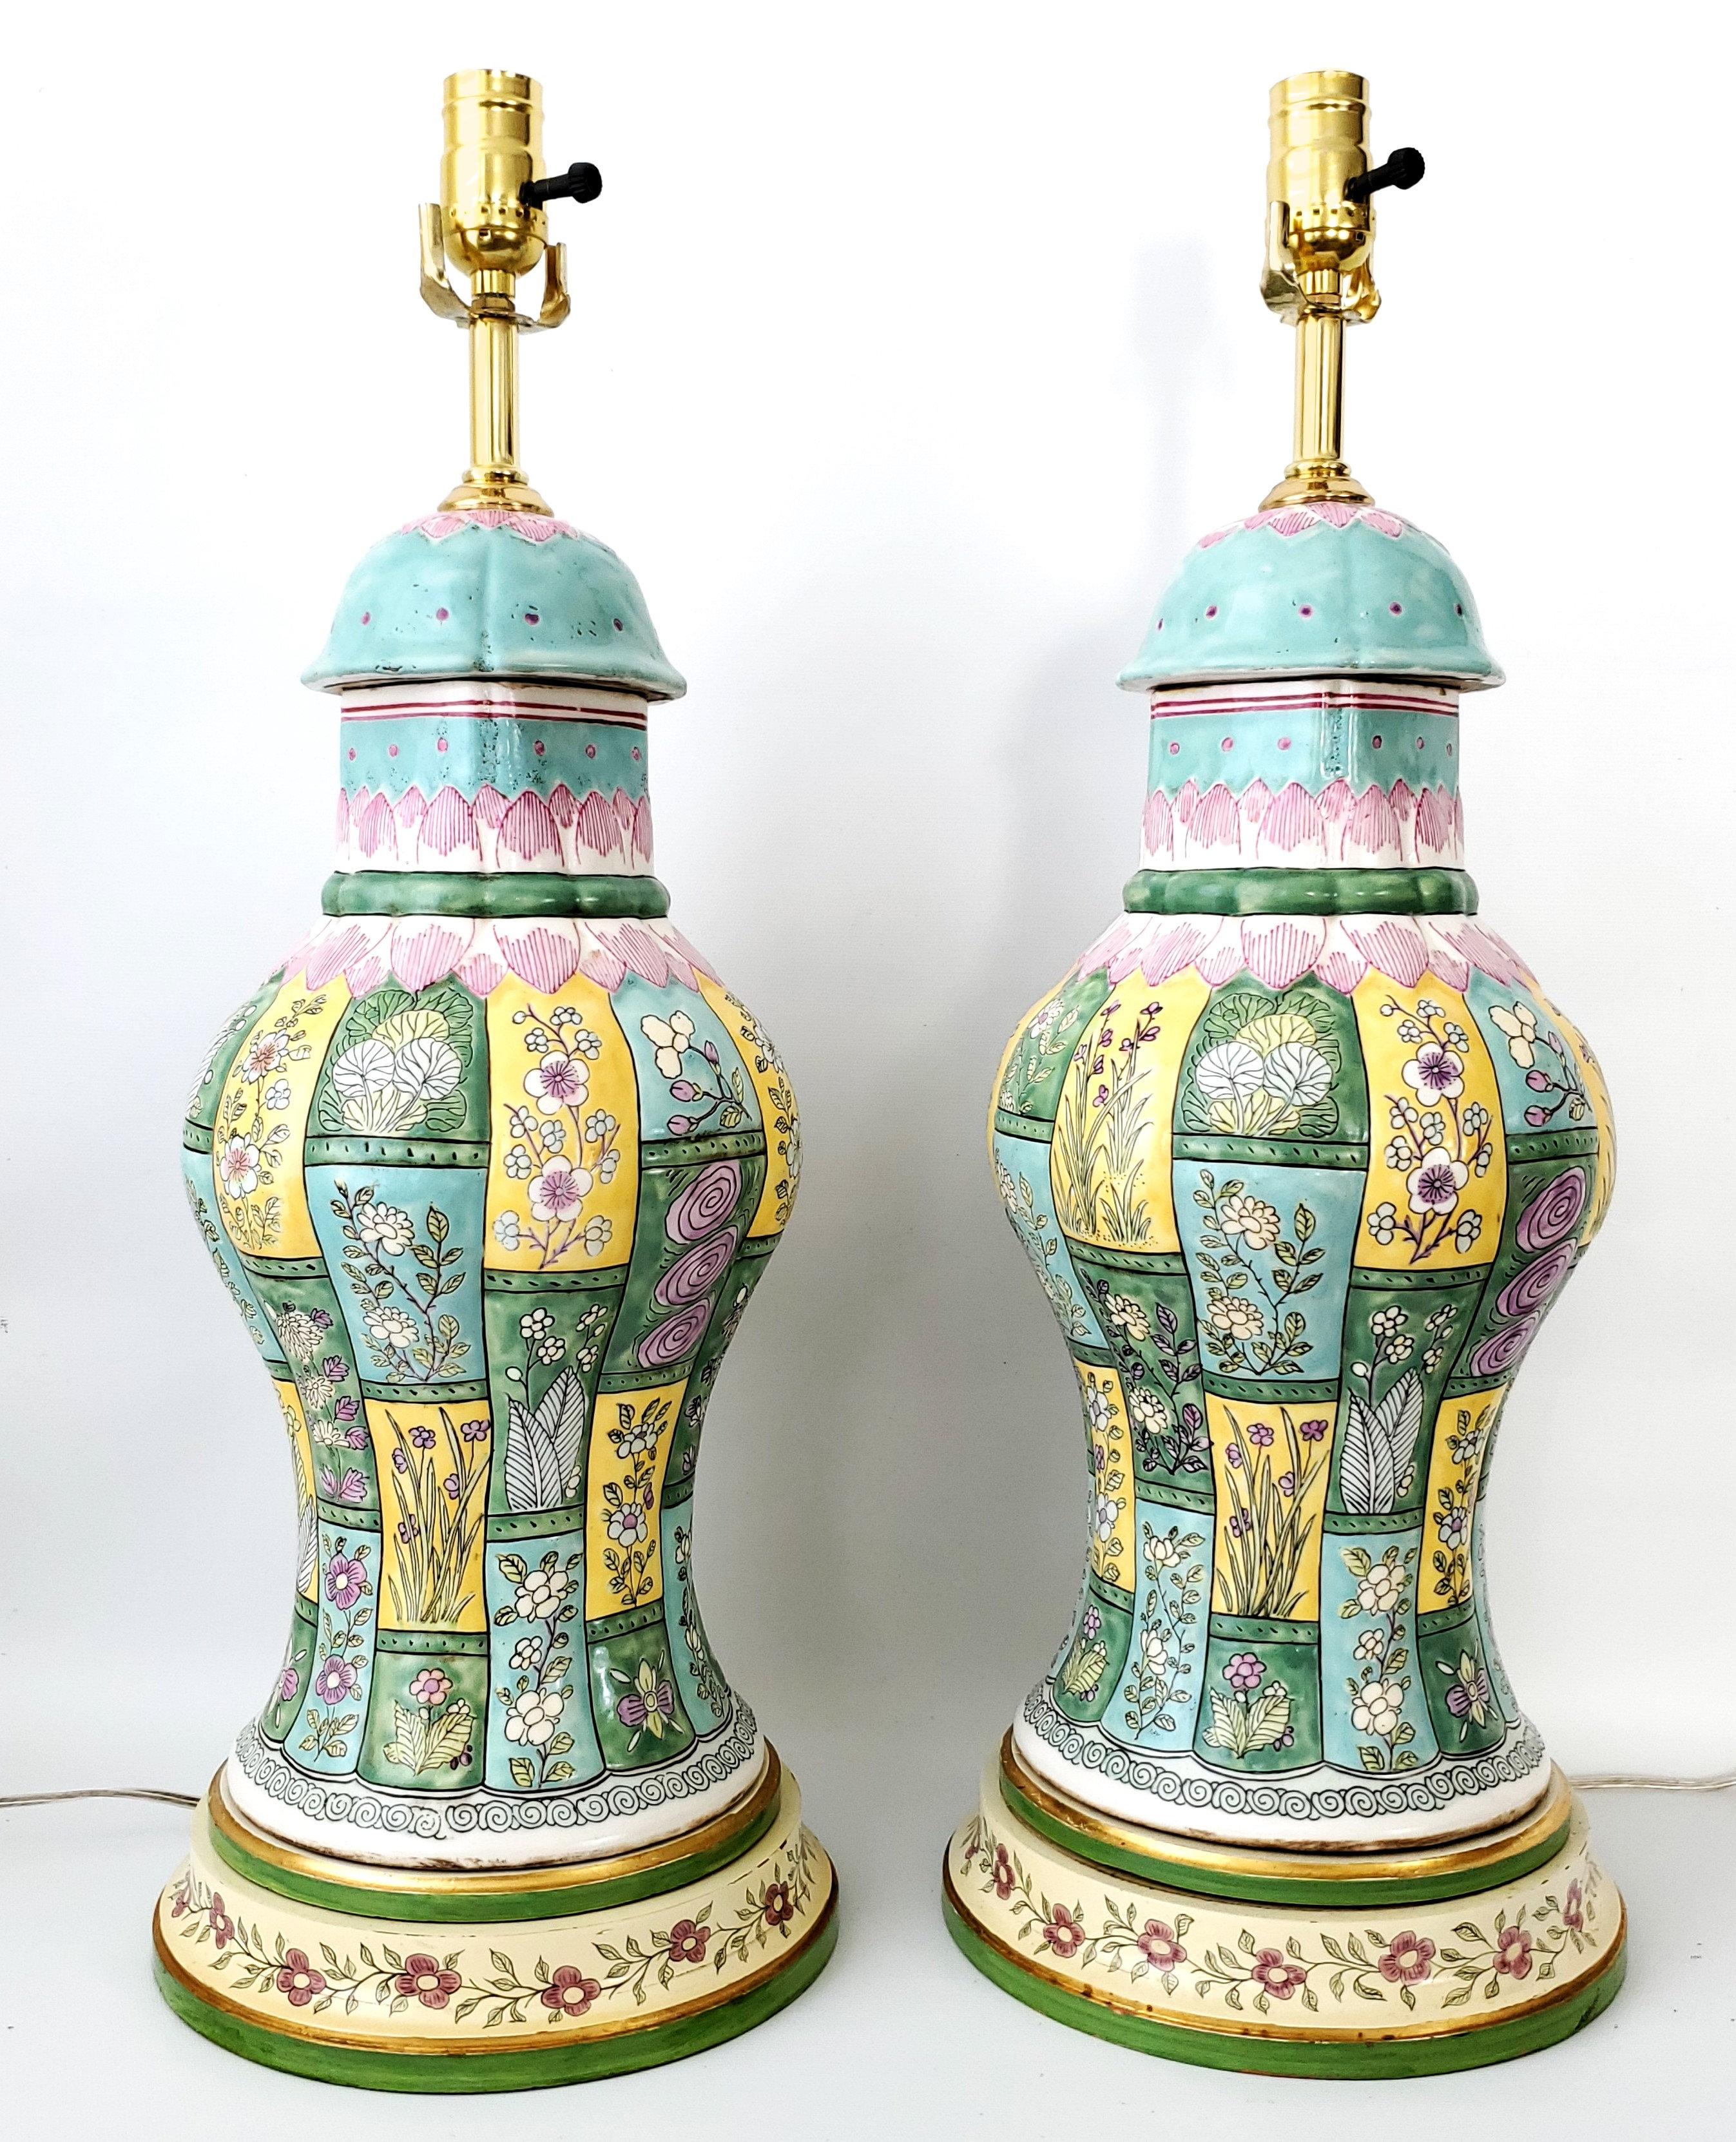 Paire de lampes de table vintage en porcelaine chinoise en forme de balustre avec une glaçure texturée. Les corps des lampes sont en porcelaine épaisse colorée avec des motifs floraux et géométriques turquoise, roses, jaunes, lavande et verts. Les